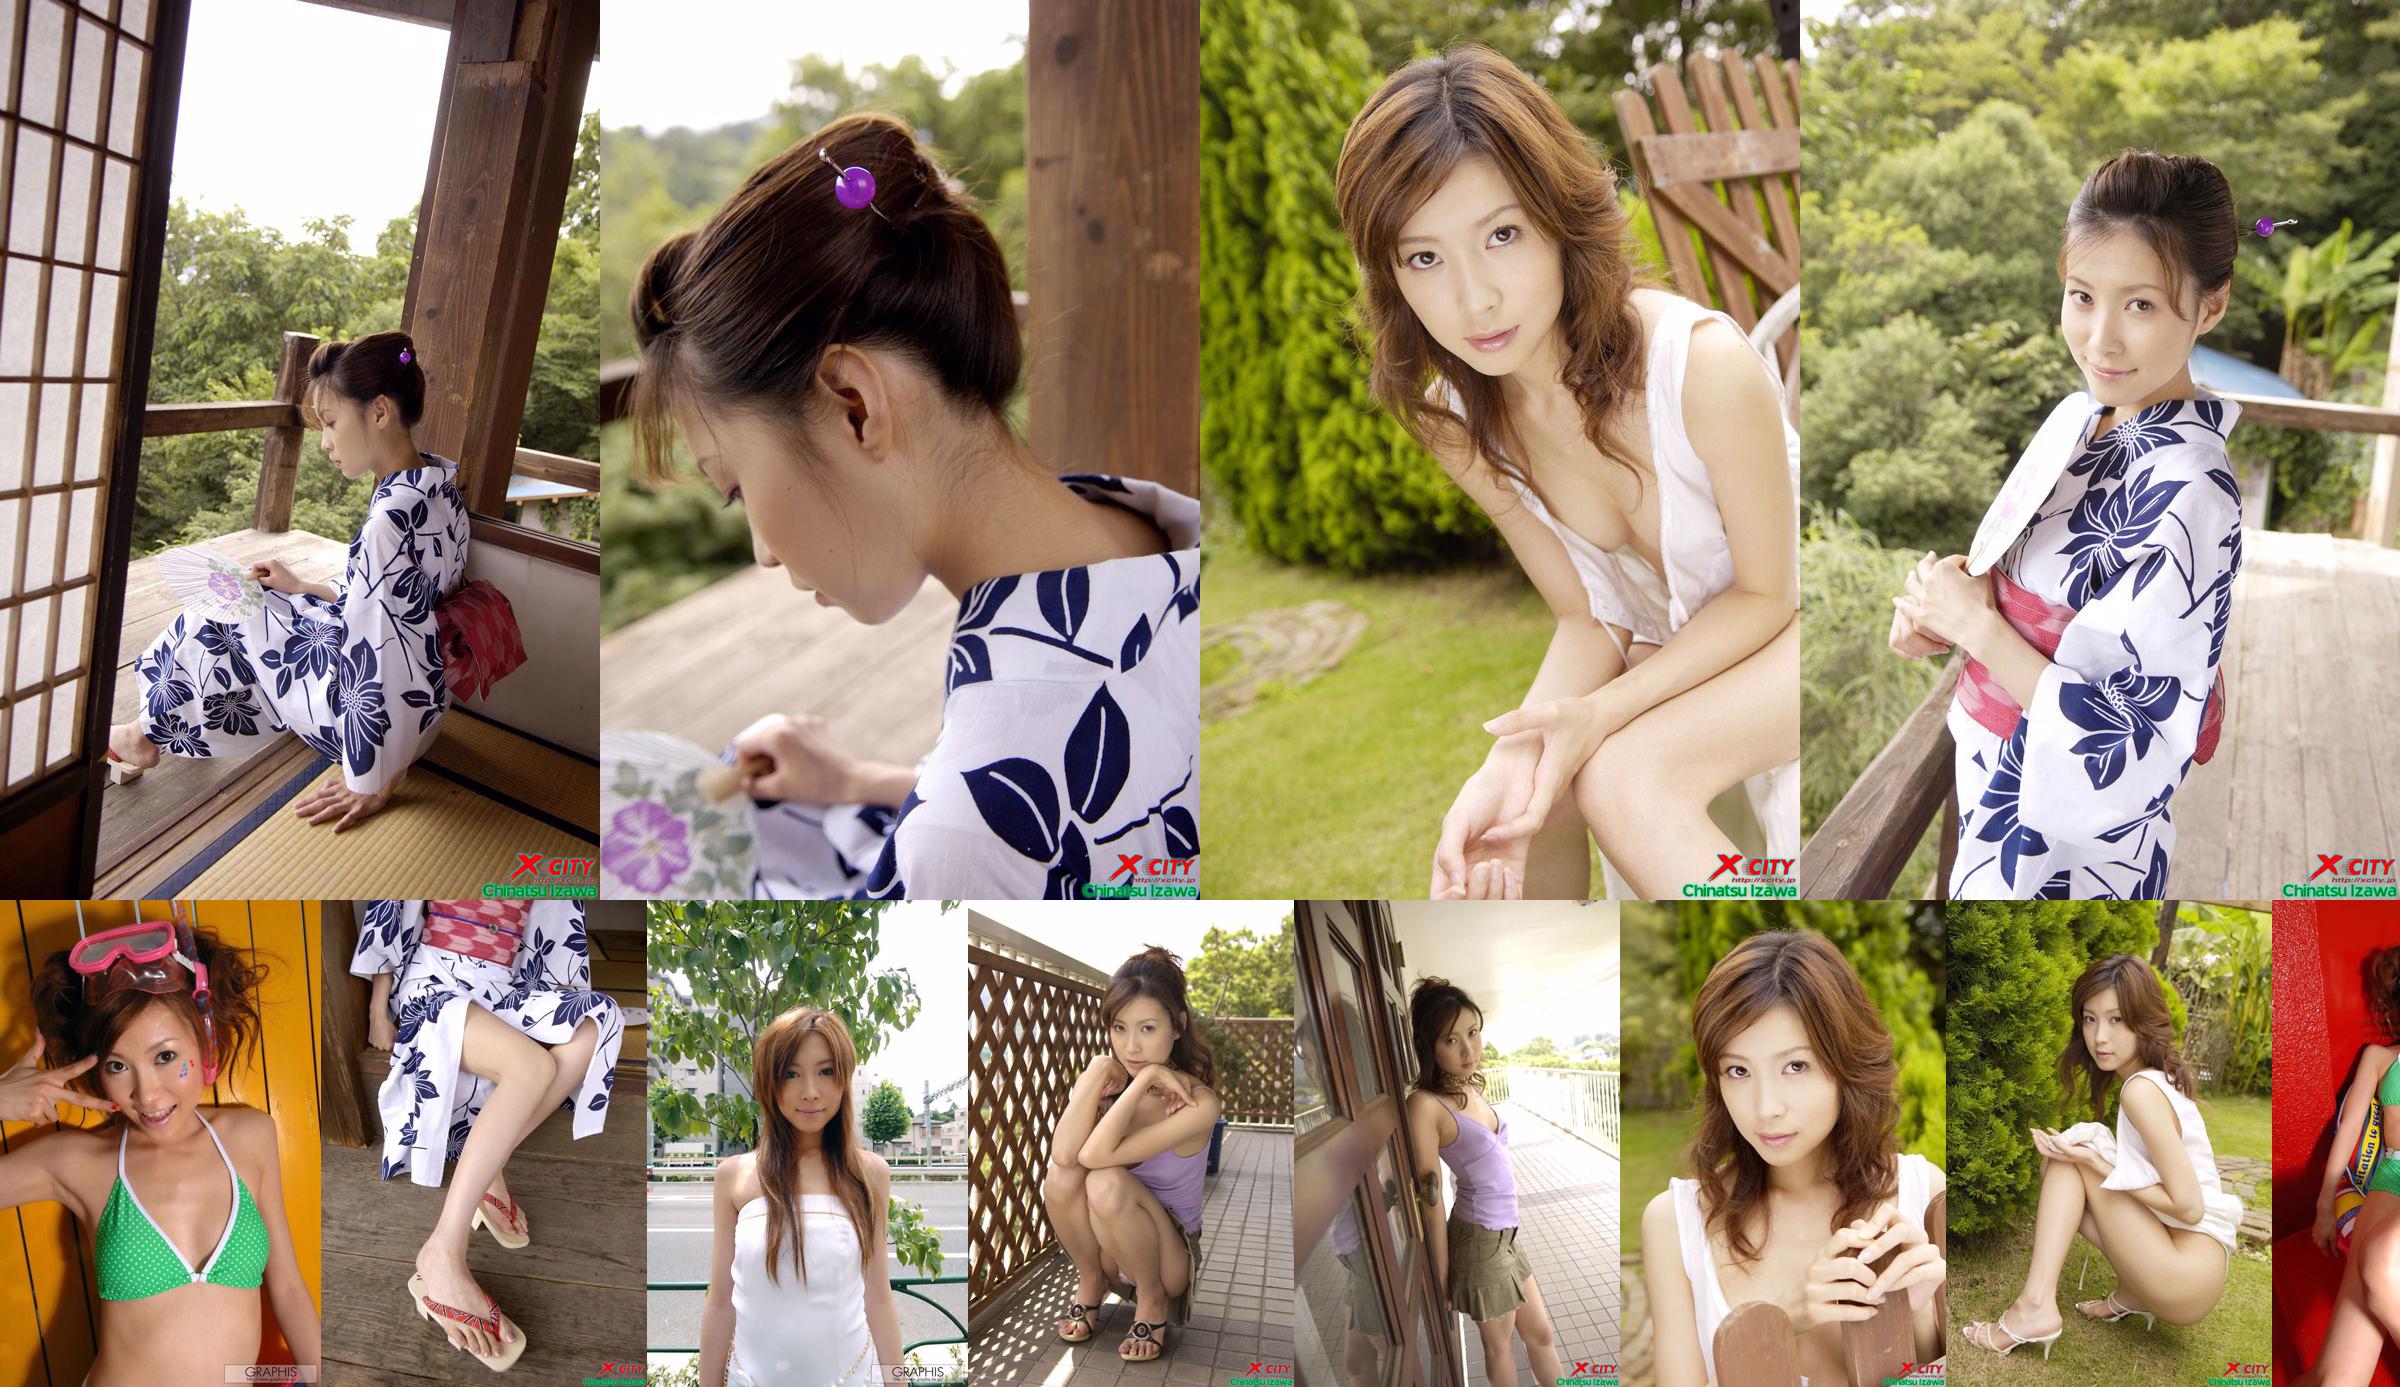 [X-City] WEB No.020 Izawa Chika "Secret Summer" No.259135 Trang 6